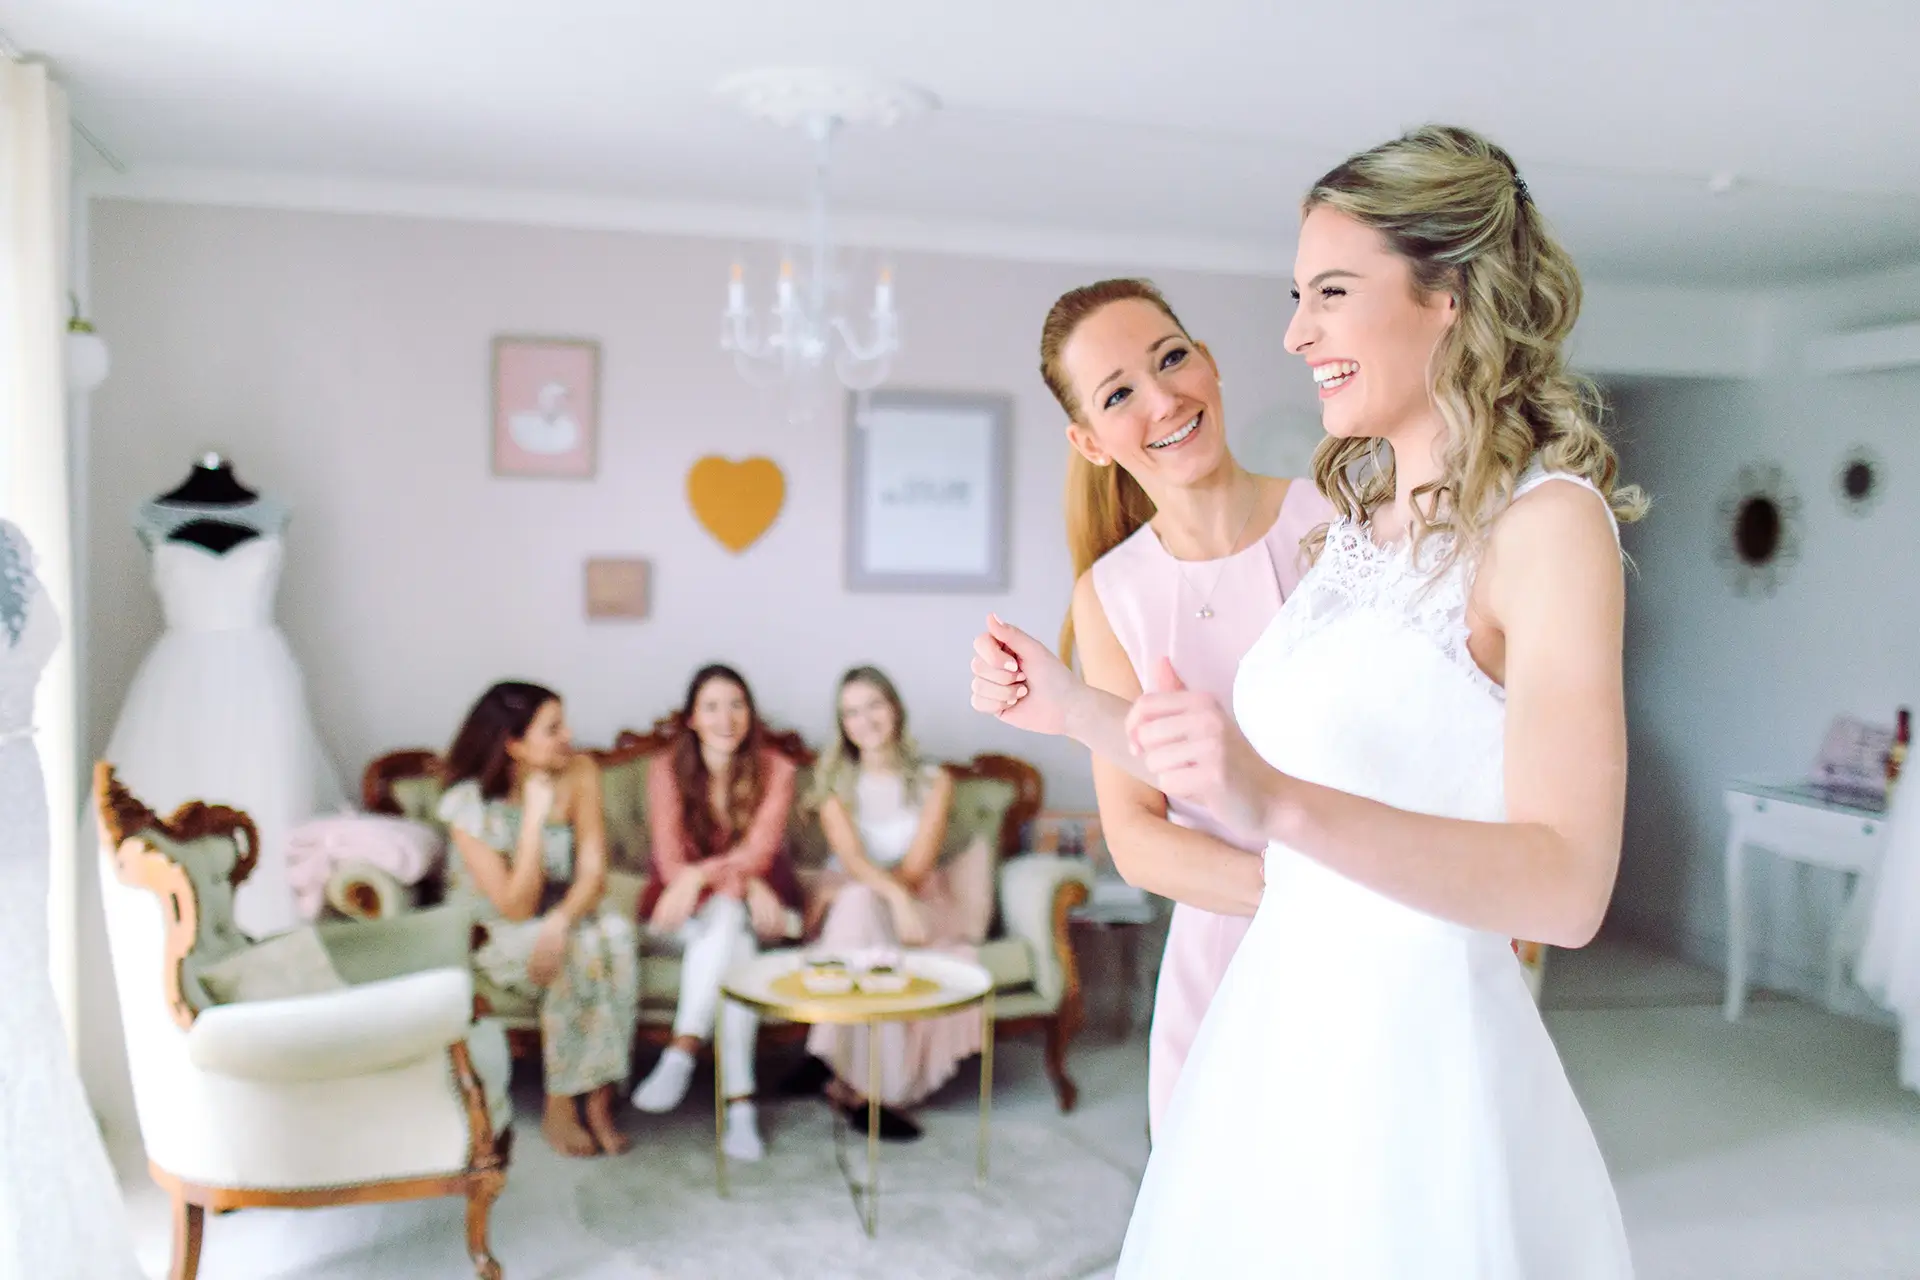 Brautmode Koblenz - Brautkleid - Hochzeitsplanung - Brautmodegeschäft - Braut freut sich